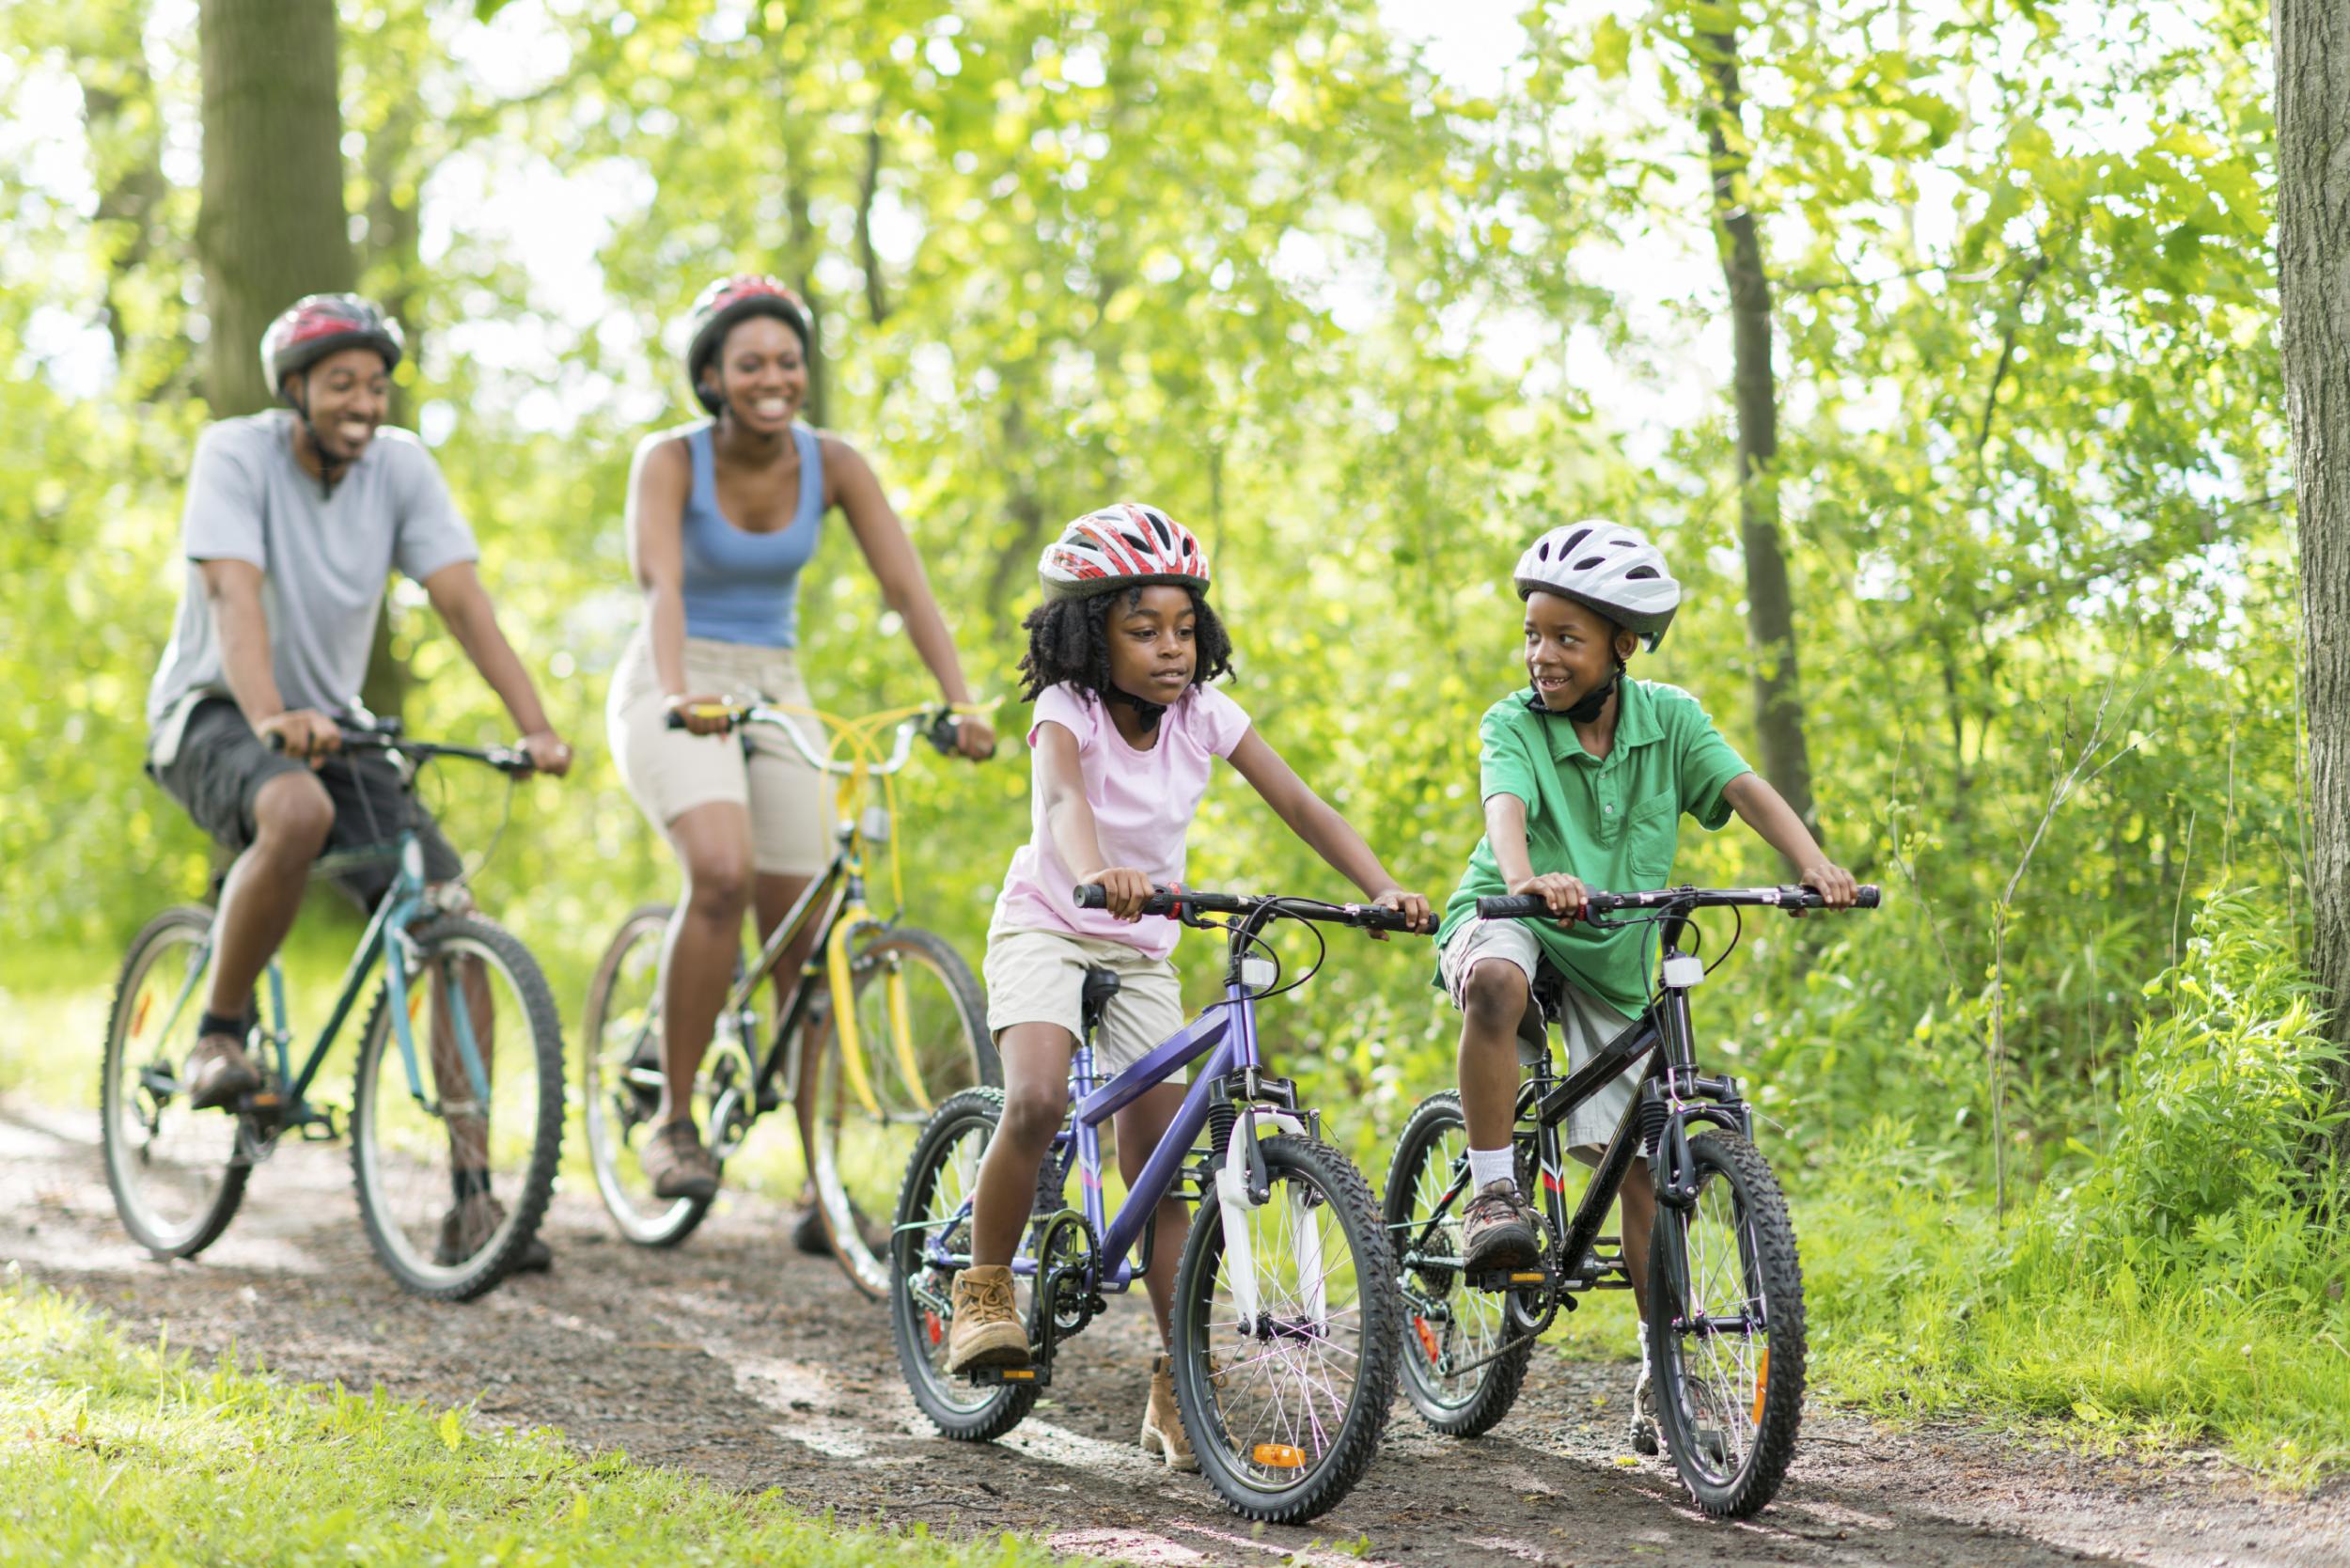 Здоровые развлечения. Прогулка на природе. Велосипед на природе. Прогулка на велосипеде. Семья на велосипедах.